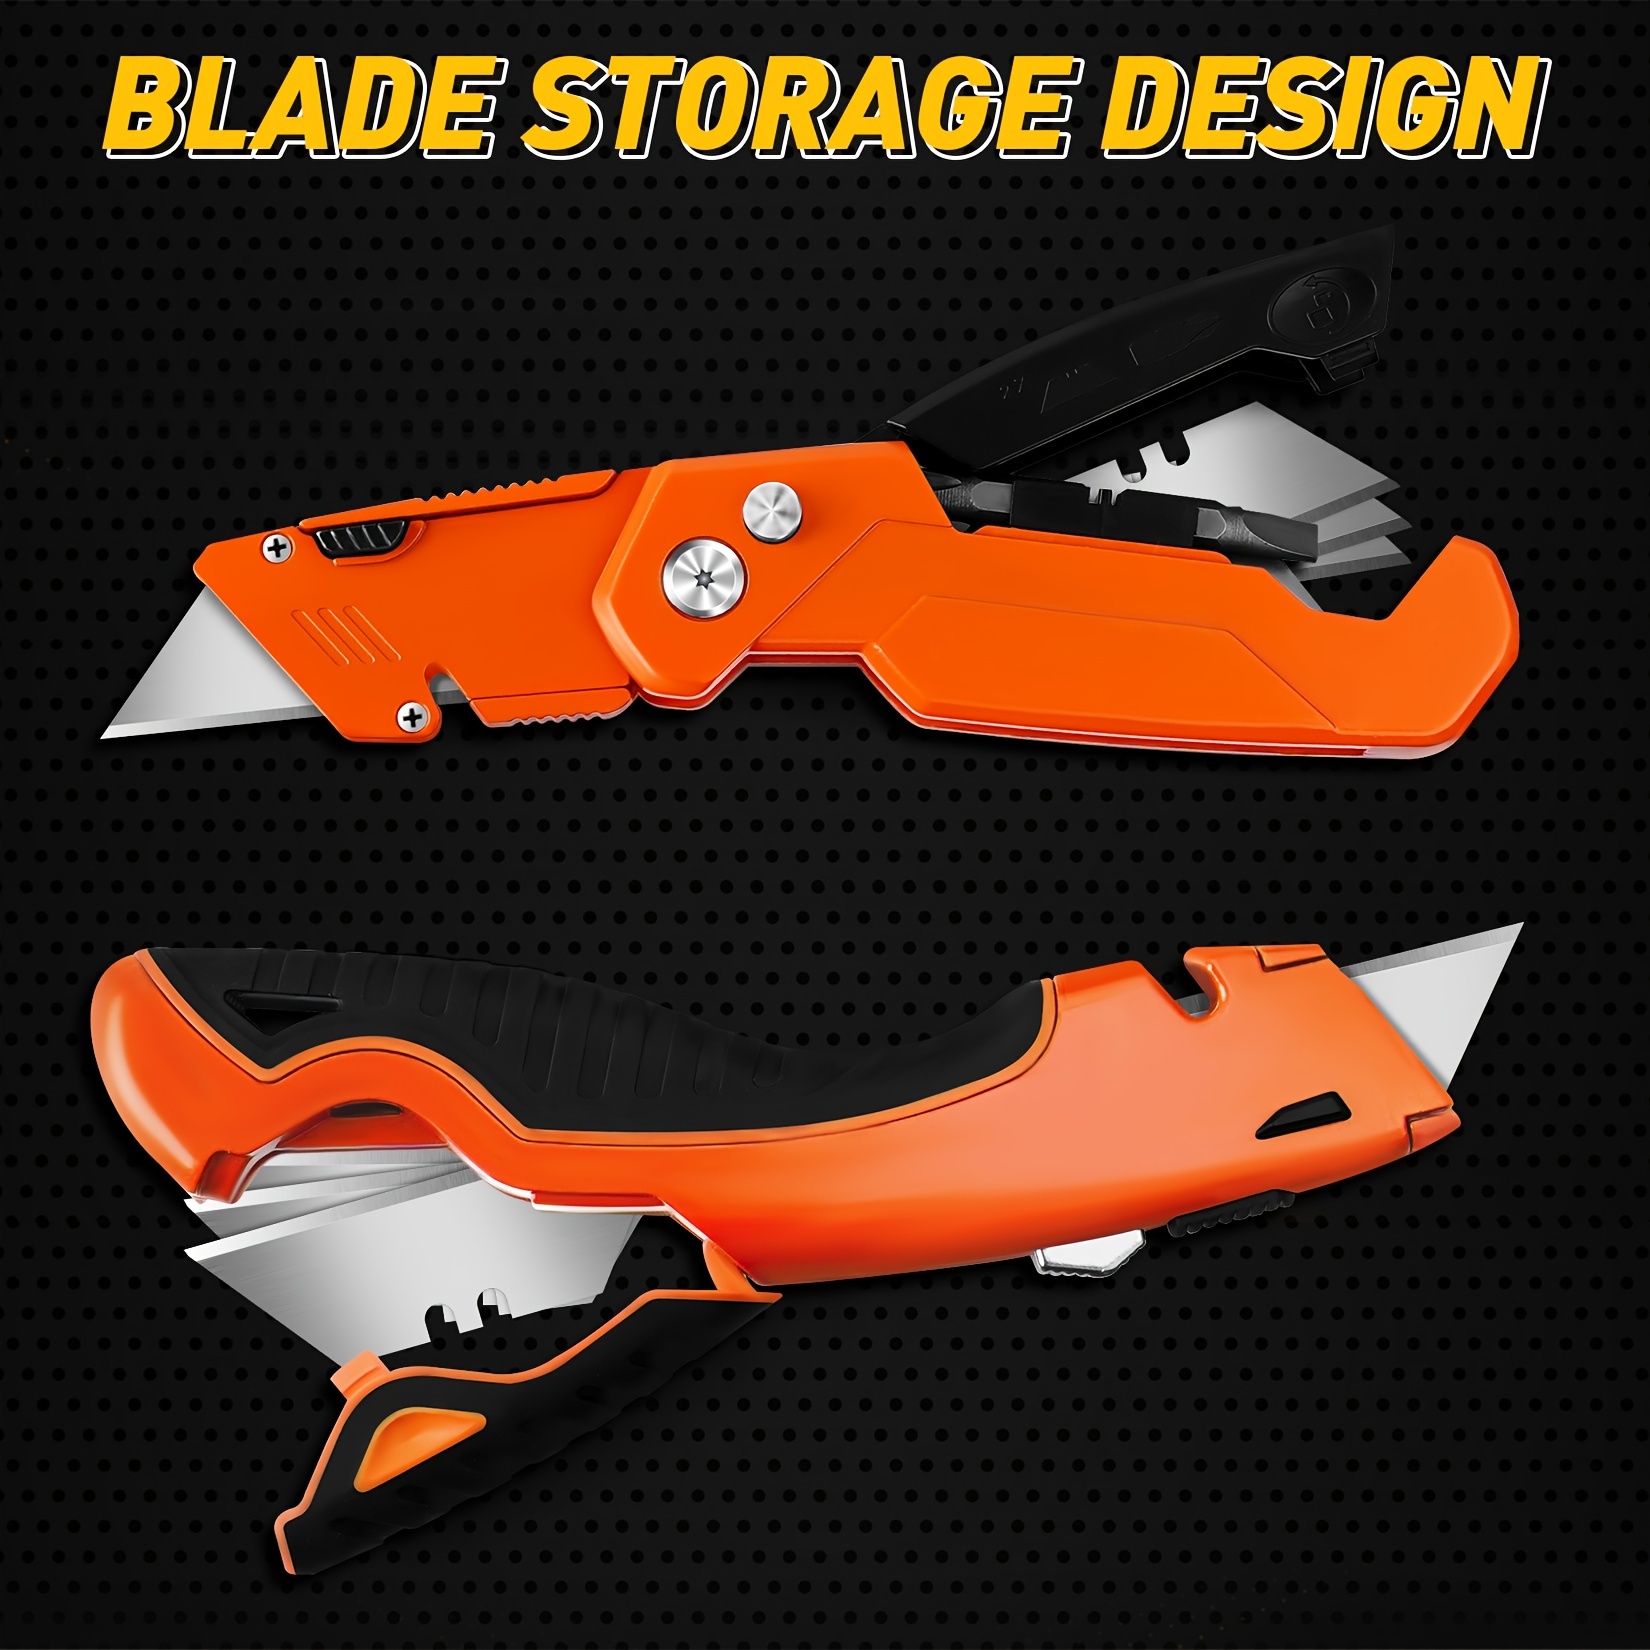 Folding Utility Knife Quick change Blades Razor Knife Extra - Temu